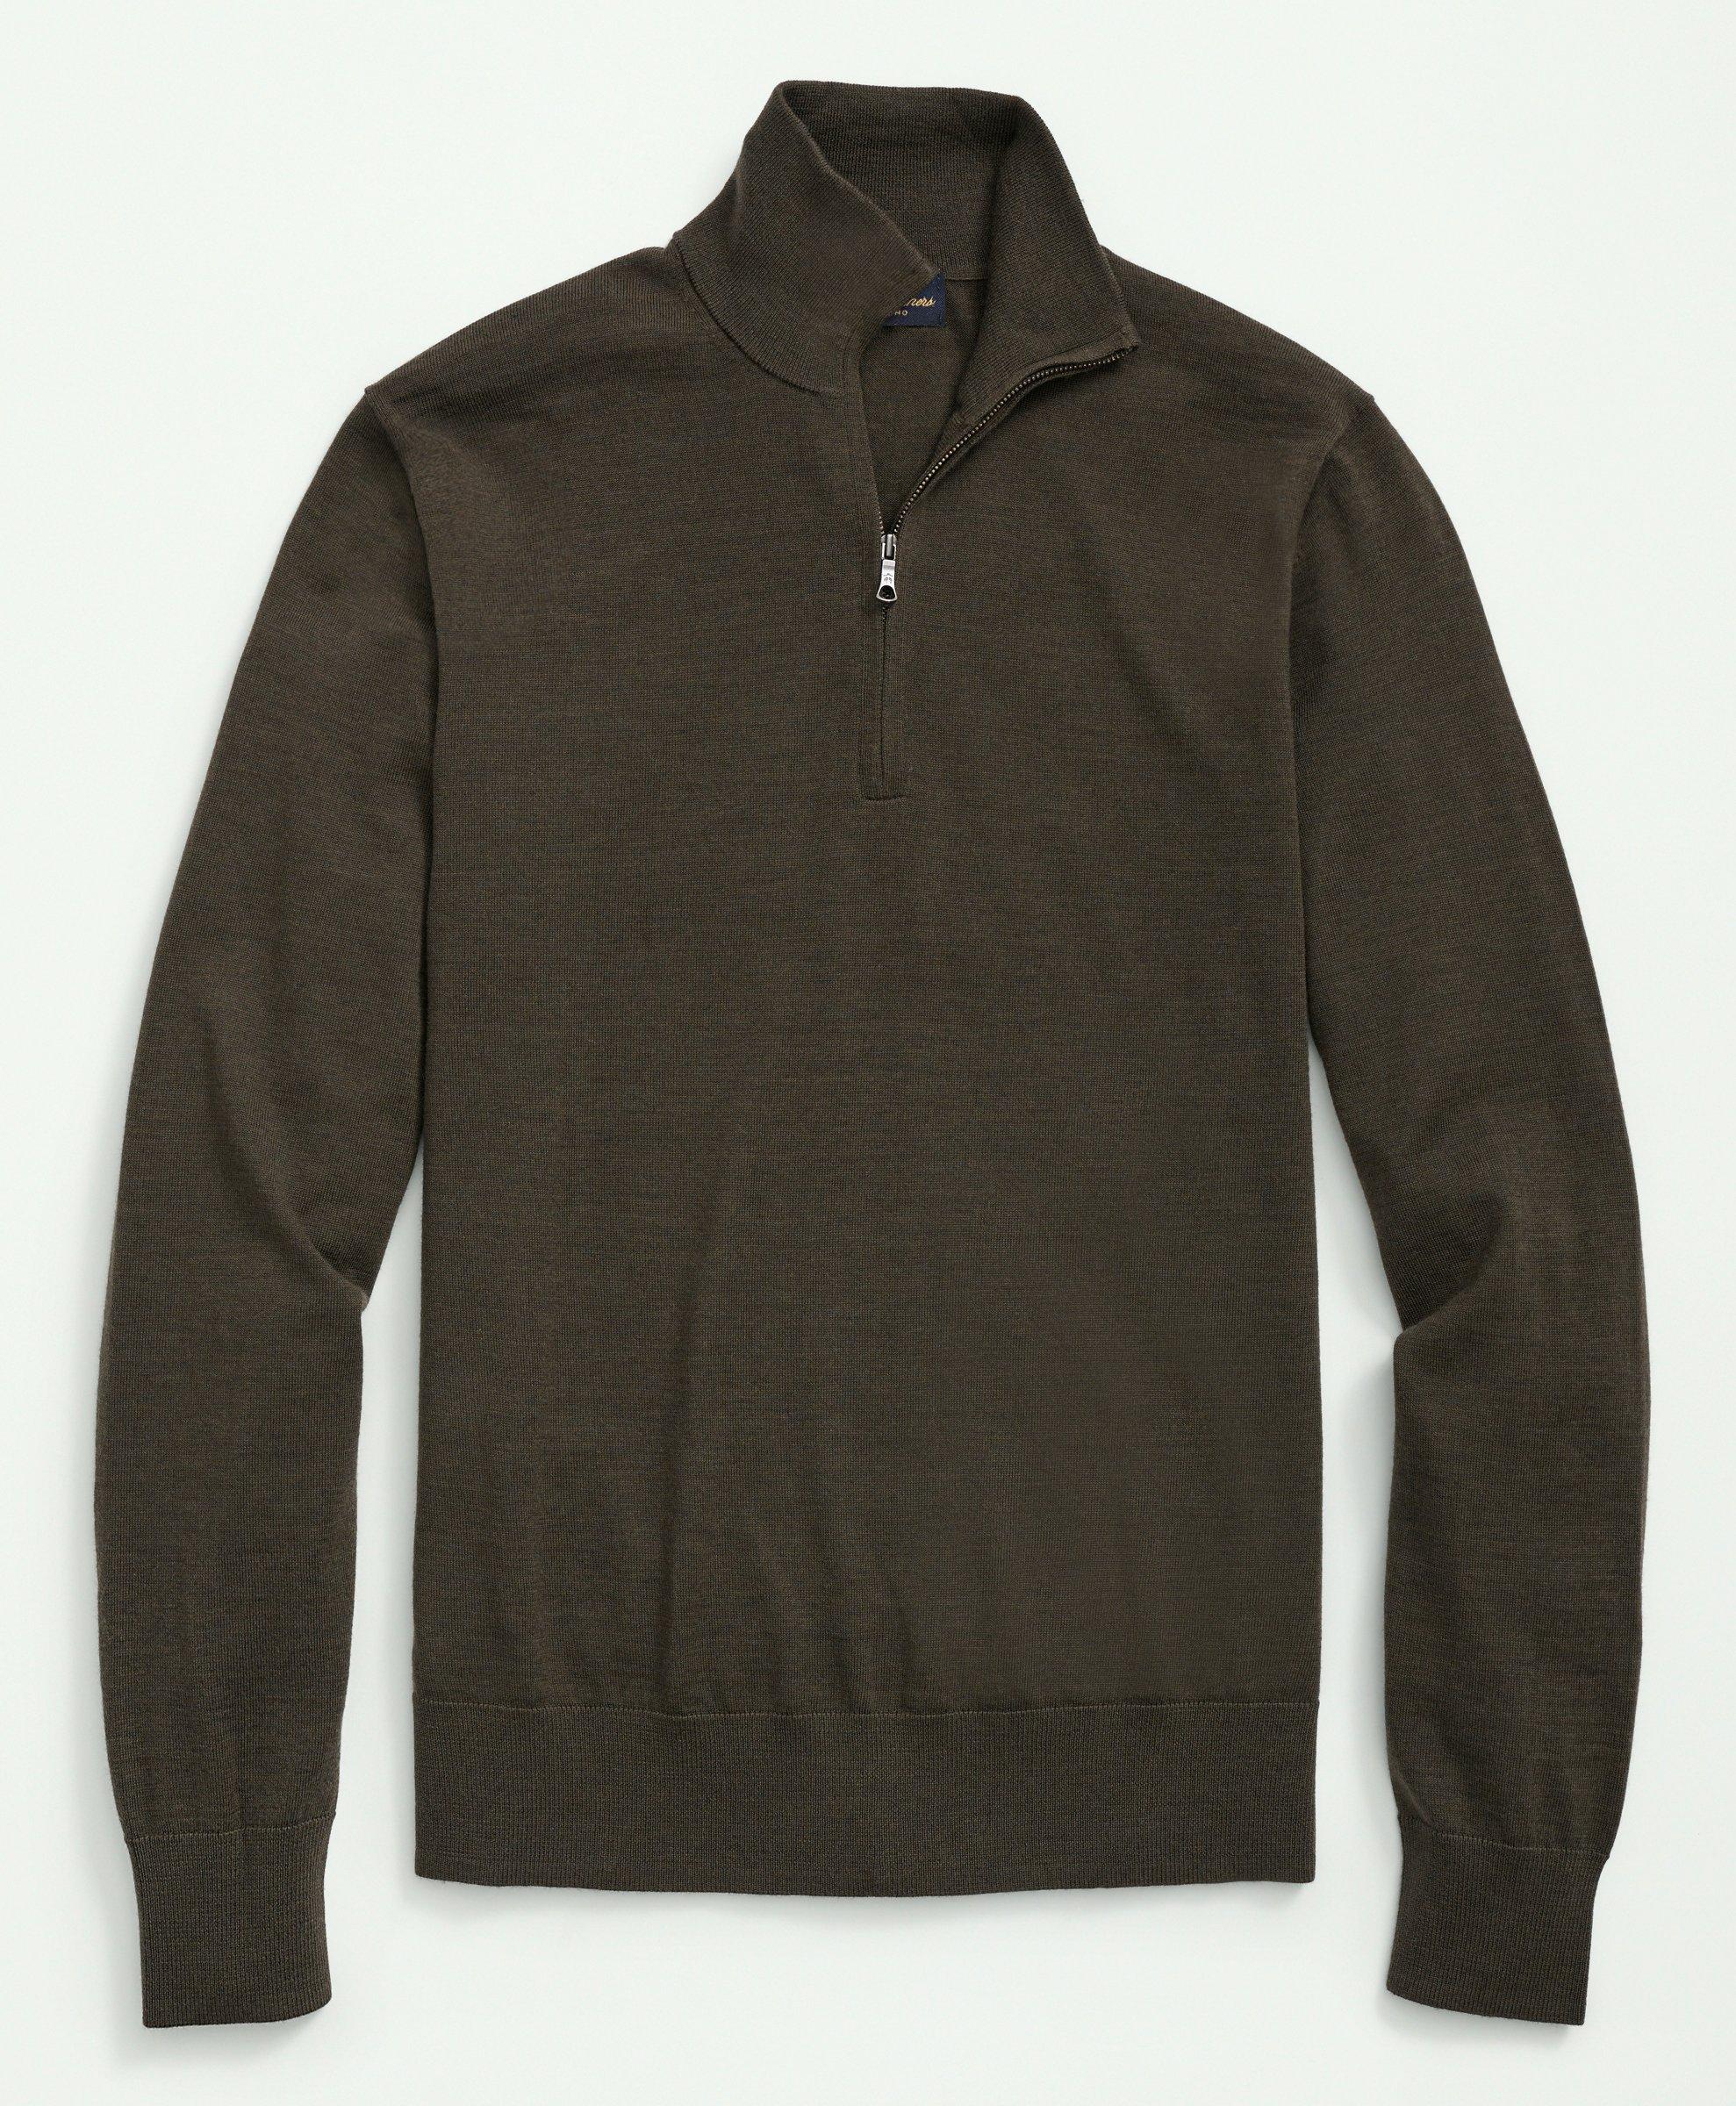 Brooks Brothers Big & Tall Fine Merino Wool Half-zip Sweater | Olive | Size 4x Tall